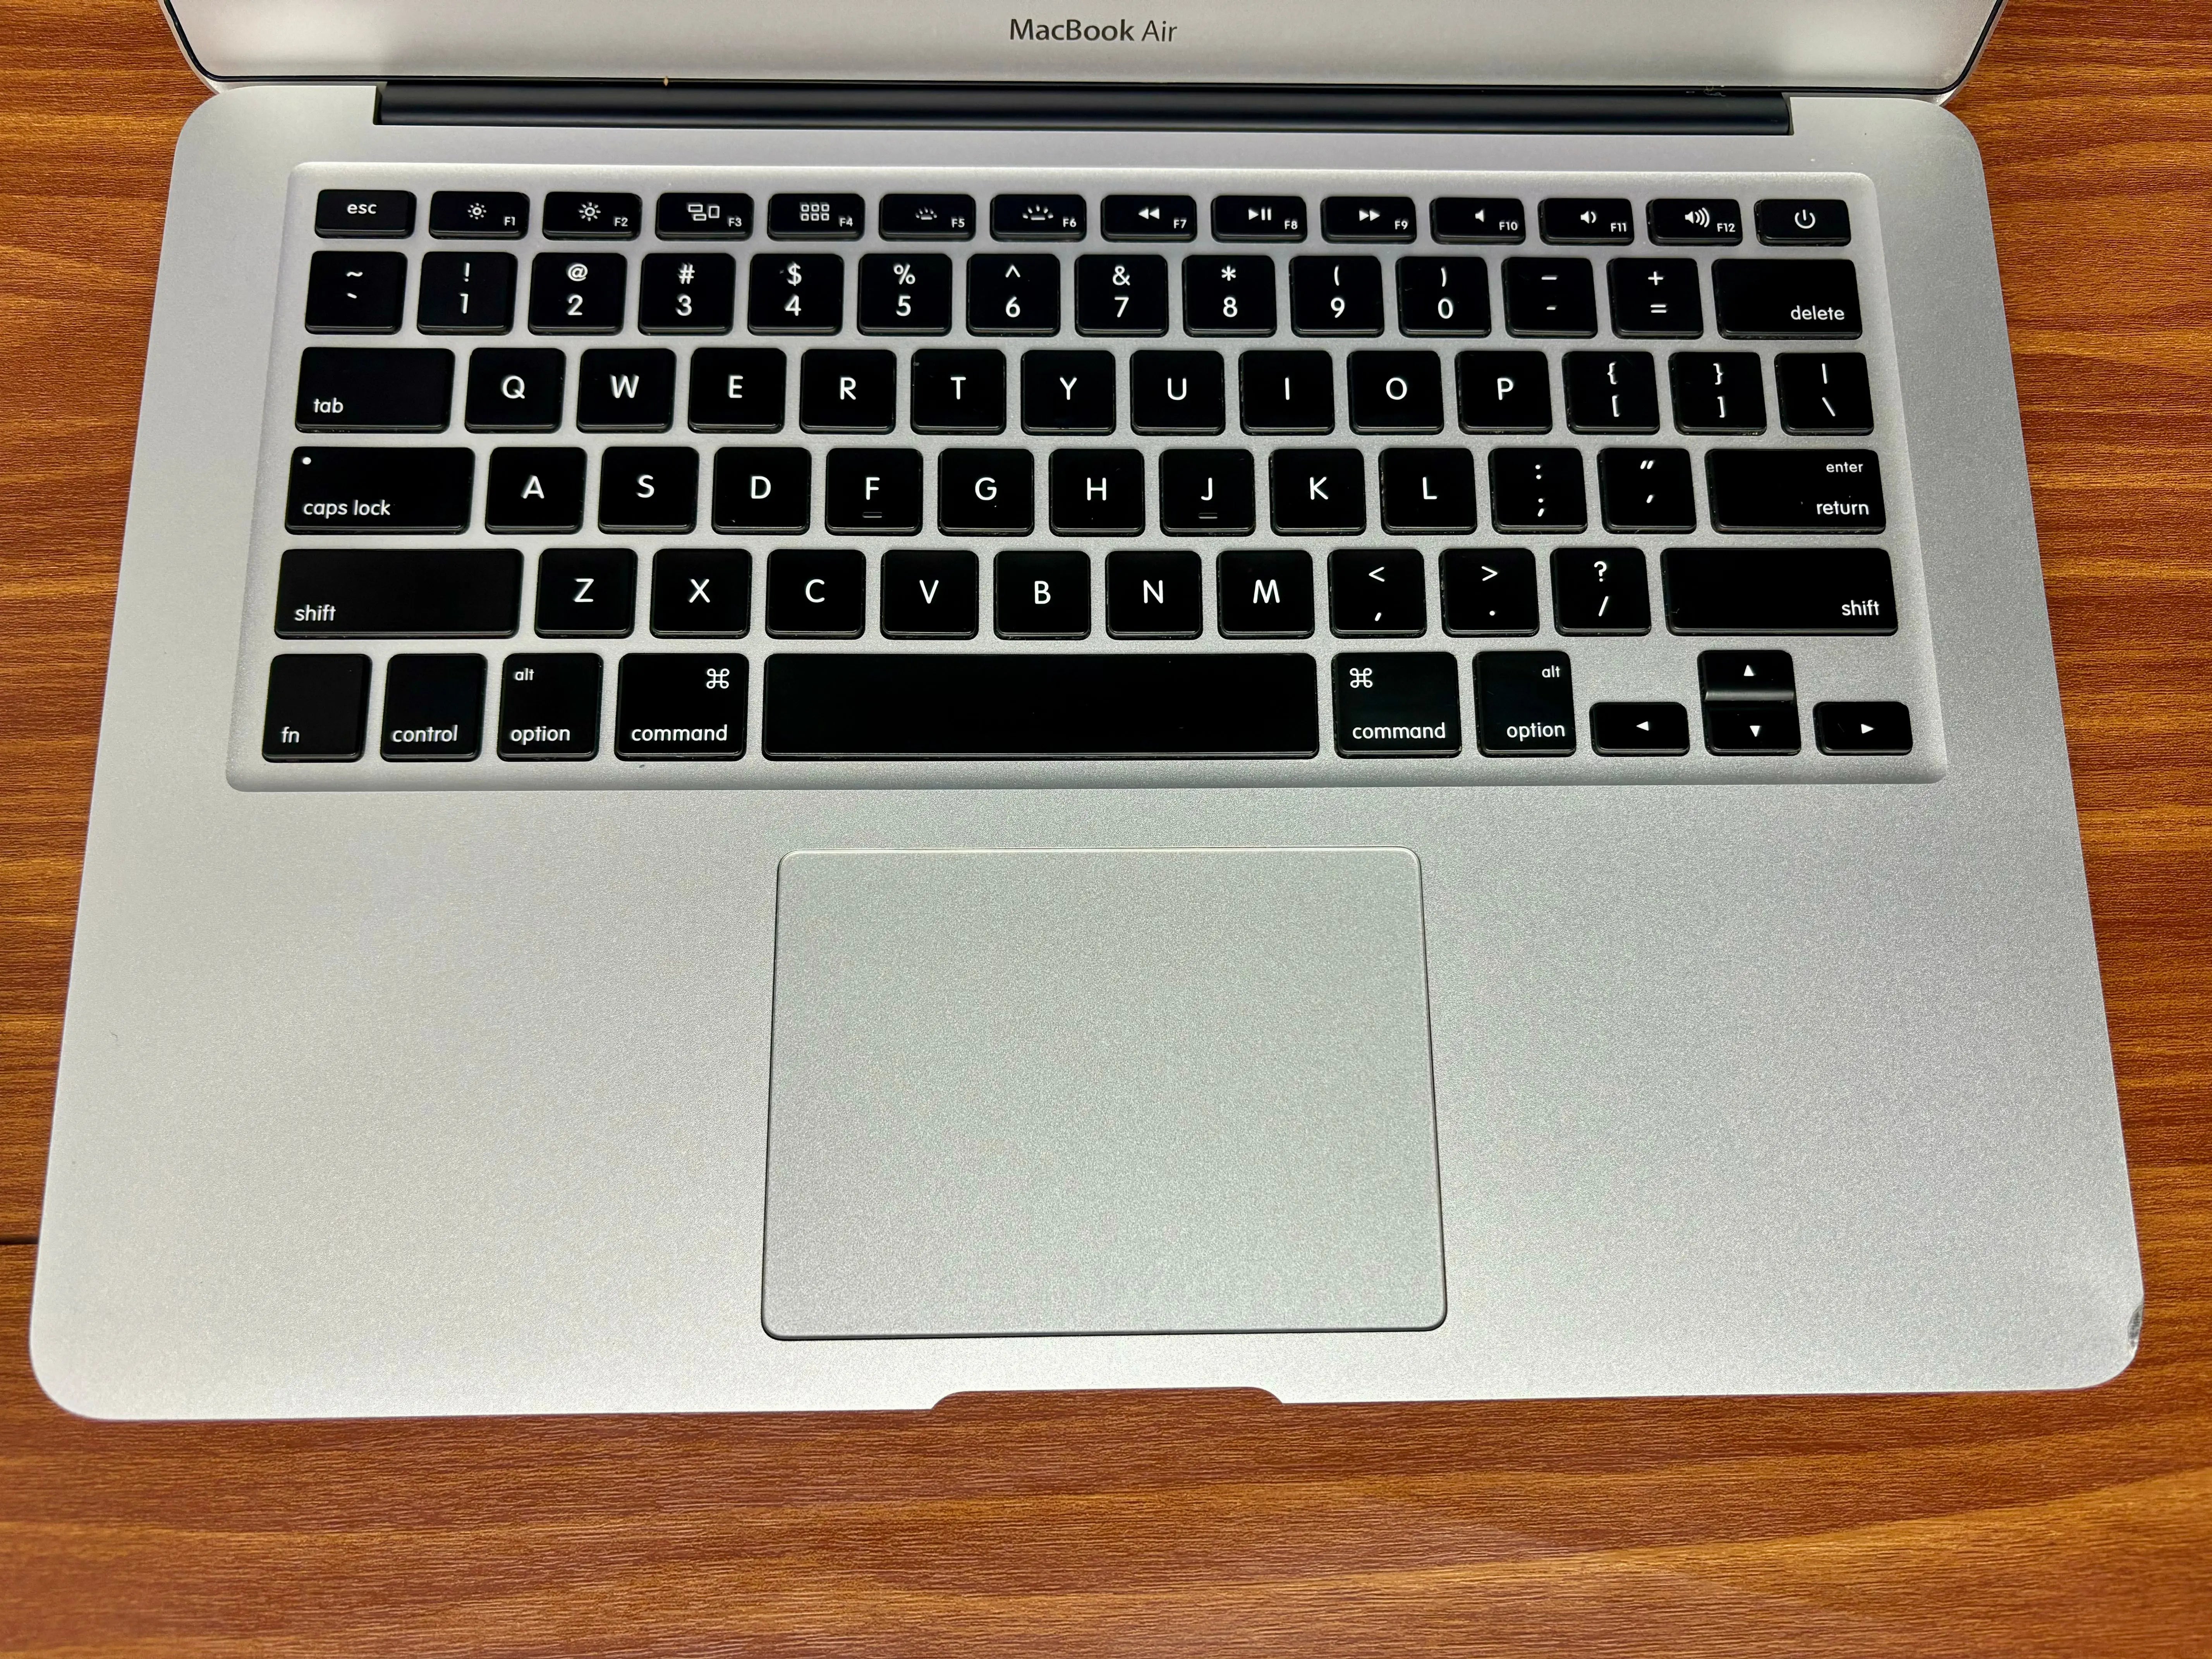 Comprar MacBook Air usado - Macbook Air 13 i5 2017 - TrocaTech Seminovos